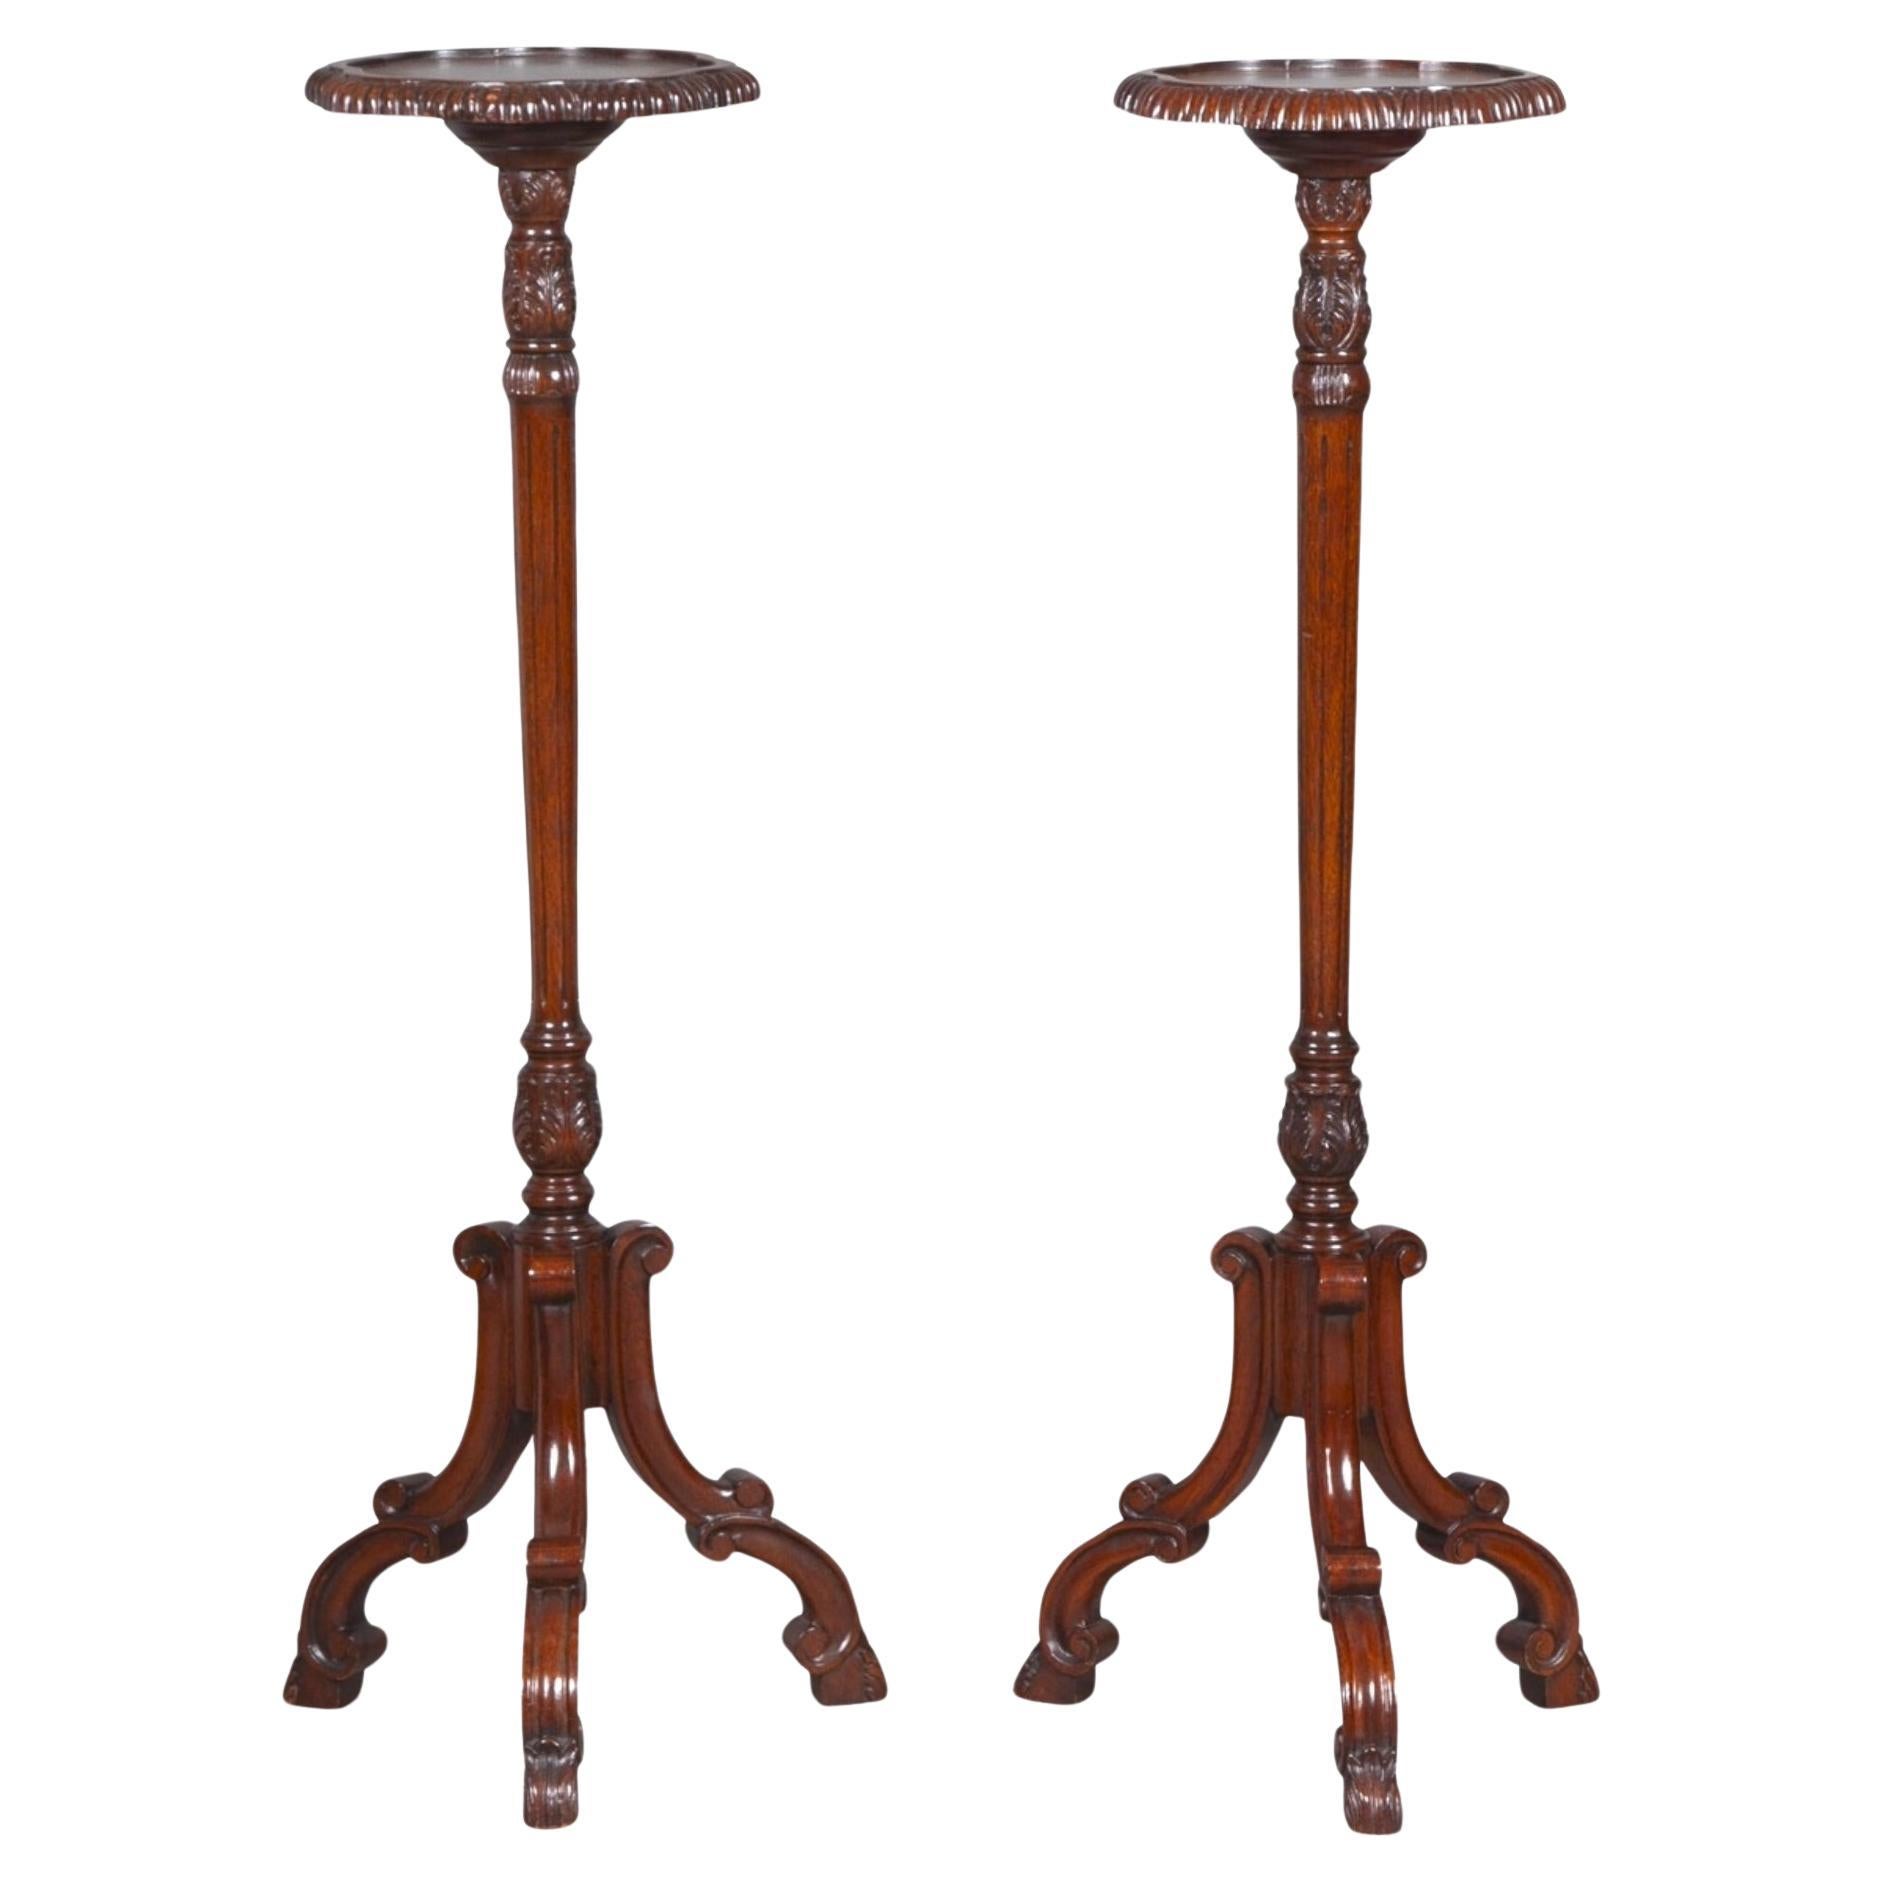 Paire de pieds tripodes de style Chippendale anglais du 19e siècle, Candle Stand / Pedestal